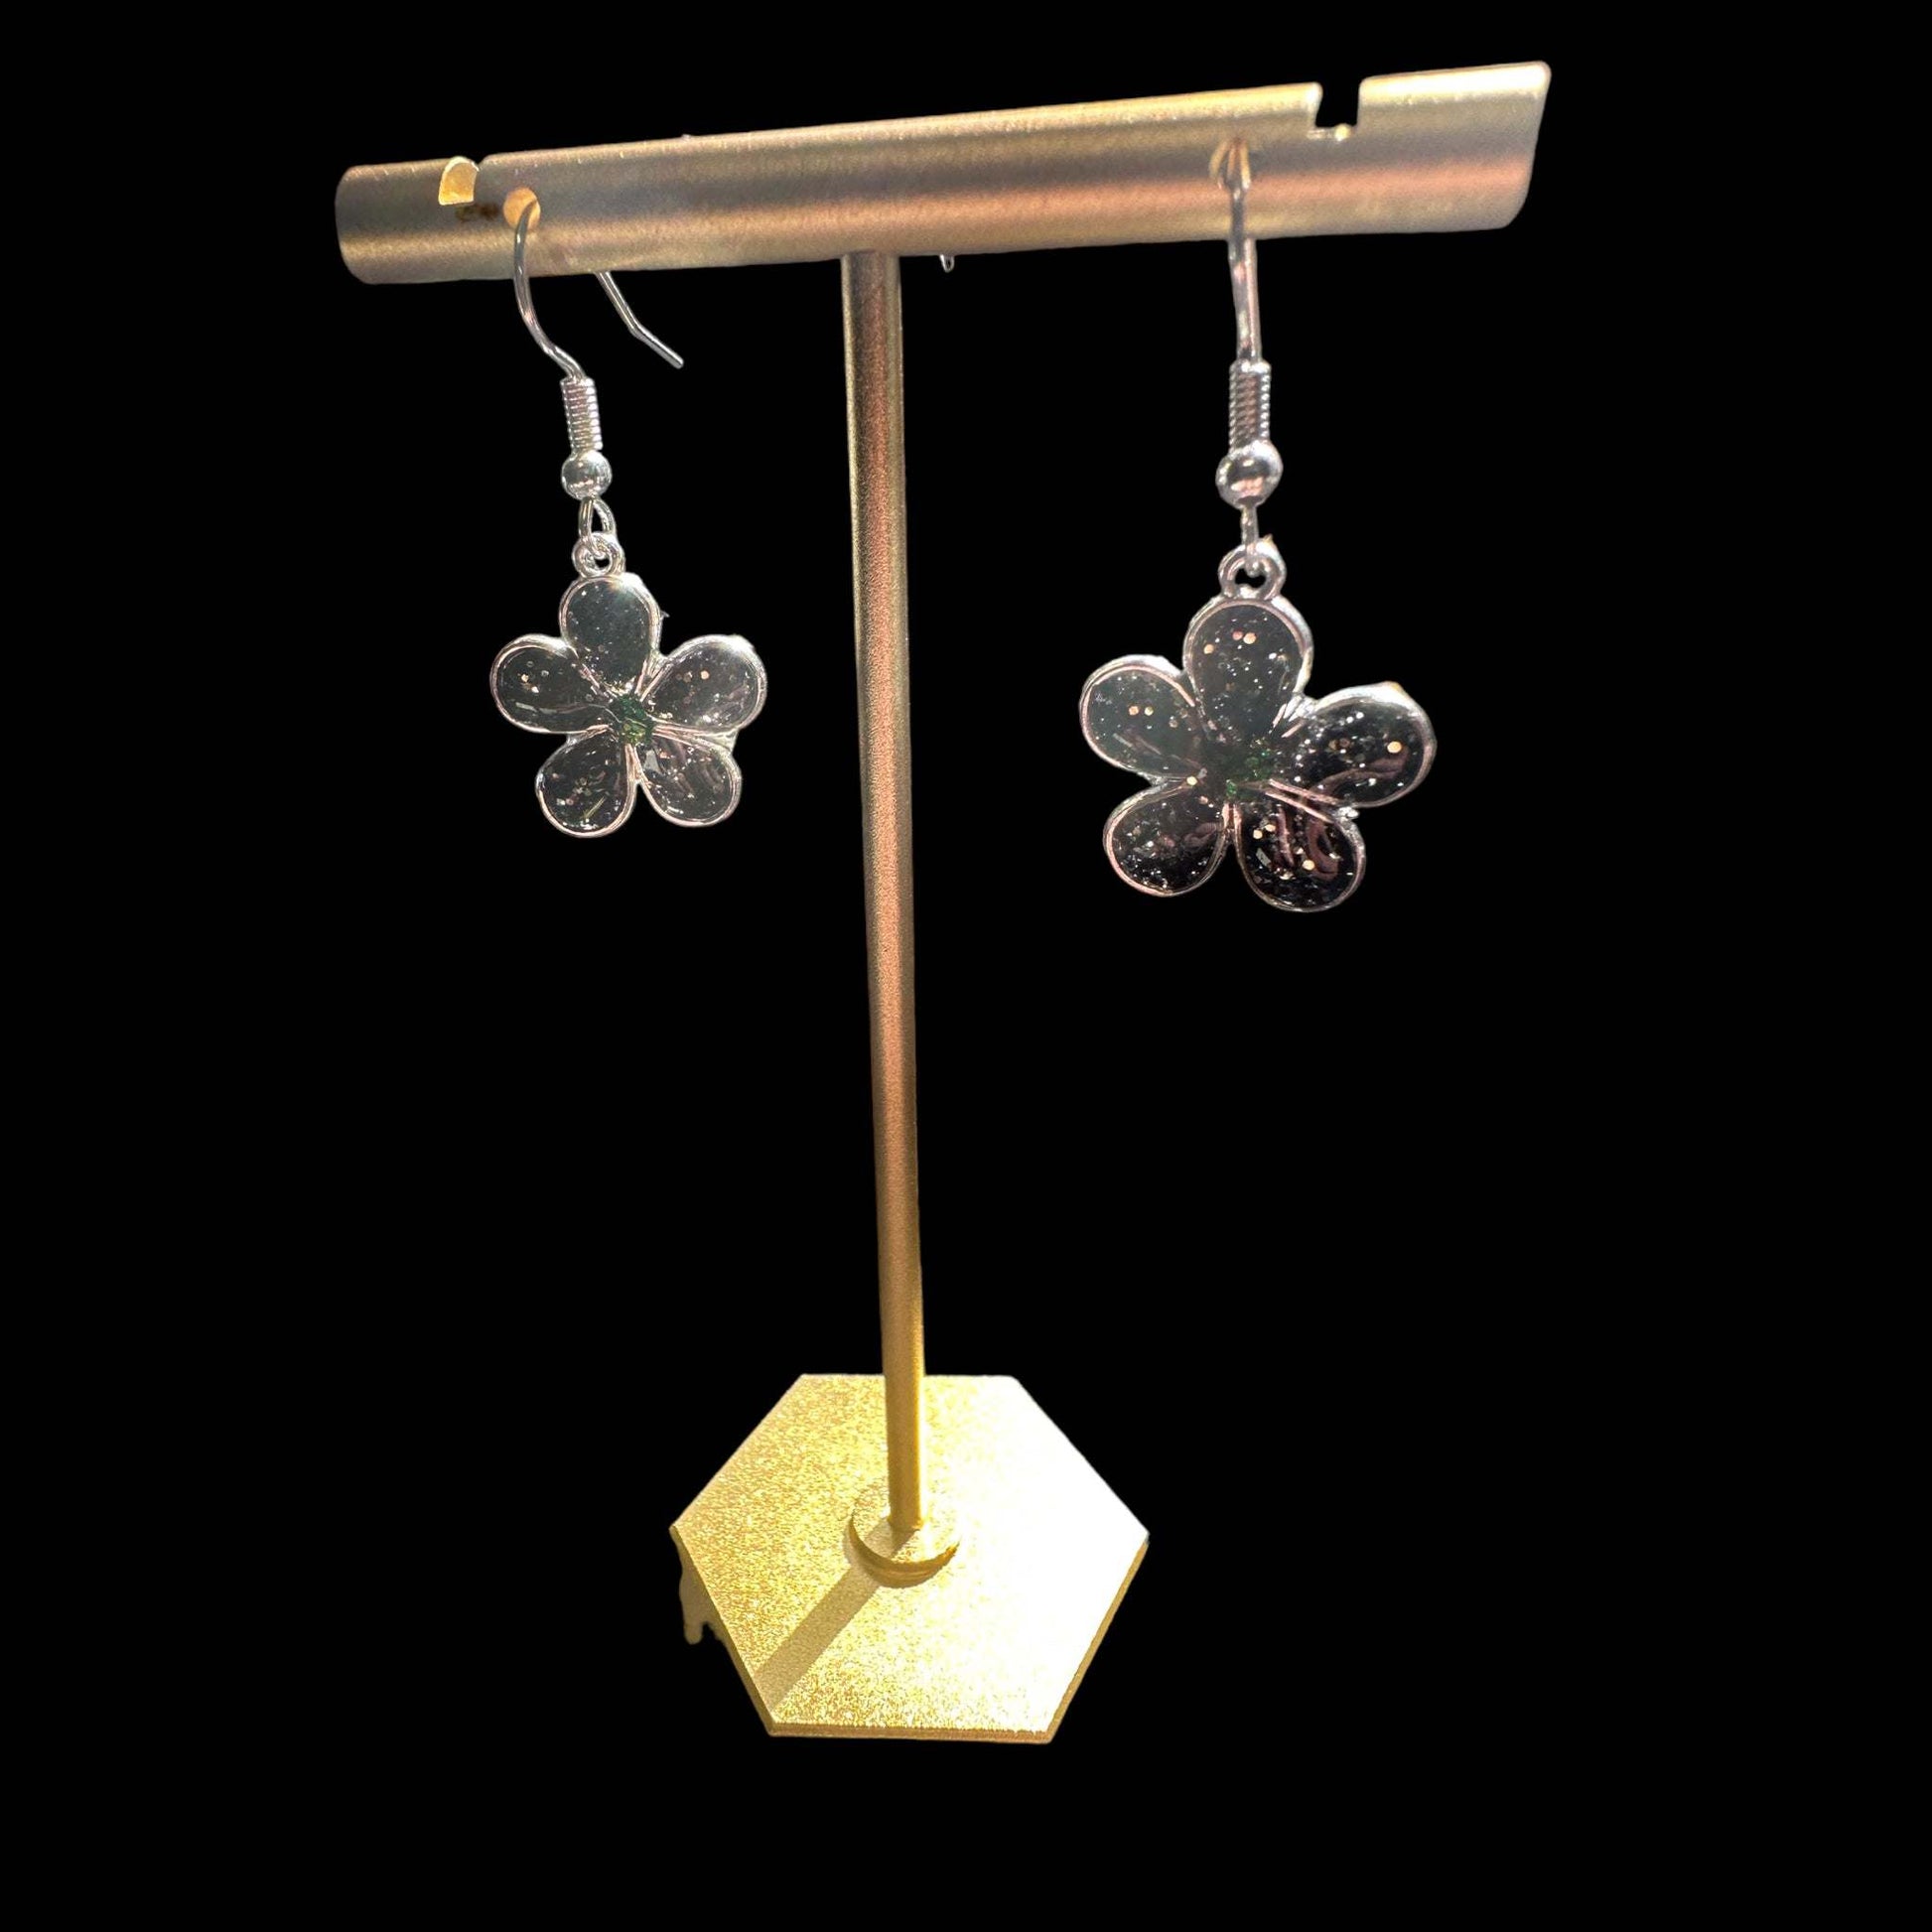 Earring Handmade Resin Flower Earring Set - Black and Silver Glitter